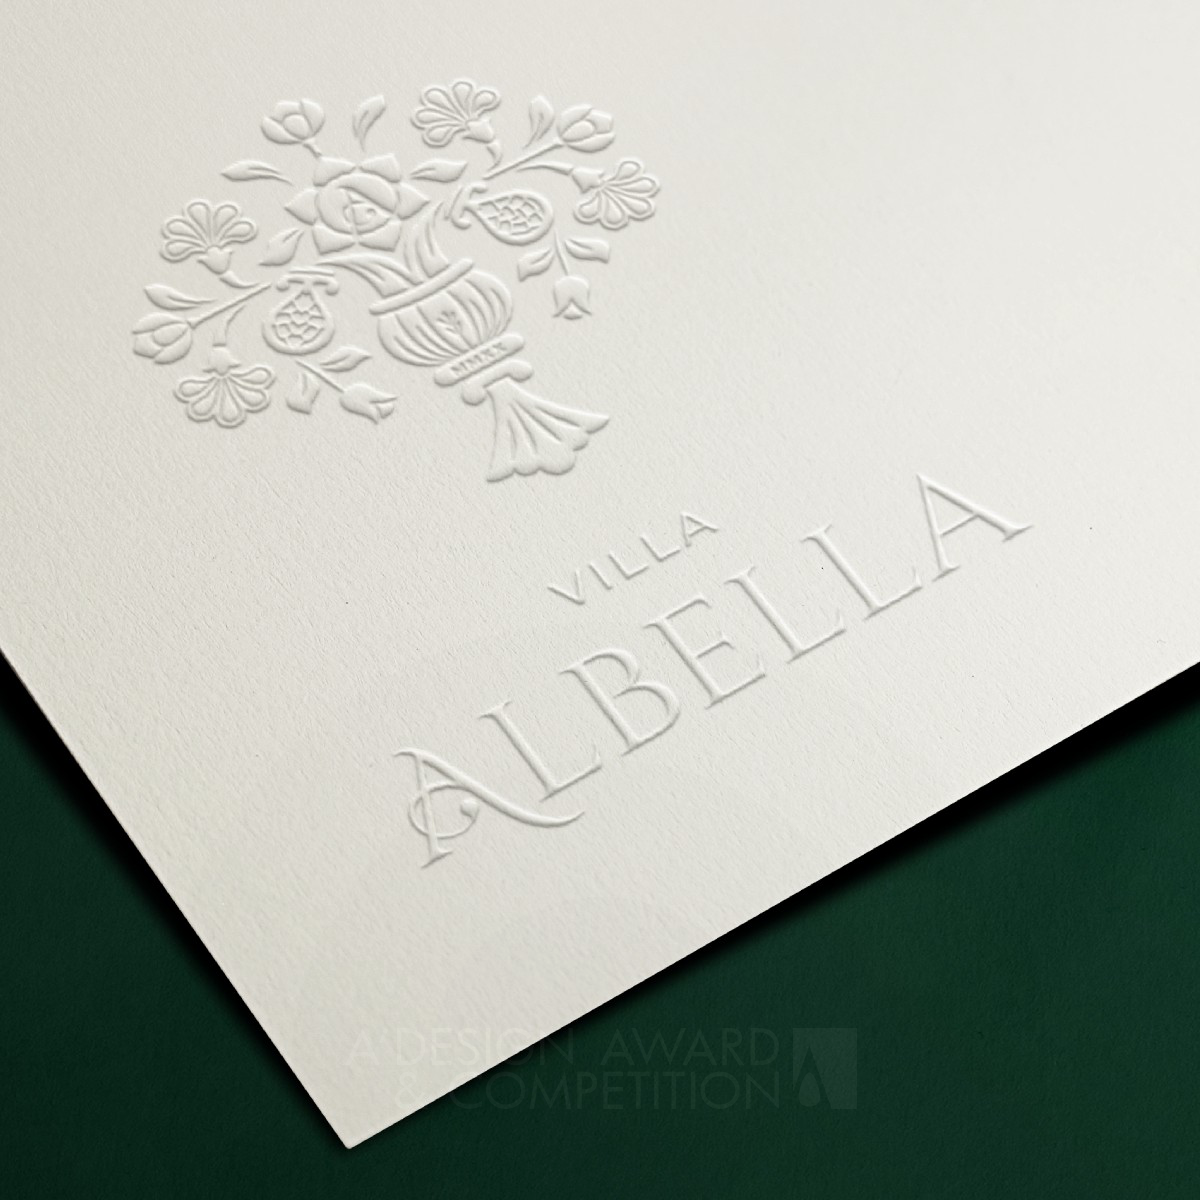 Albella Brand Identity